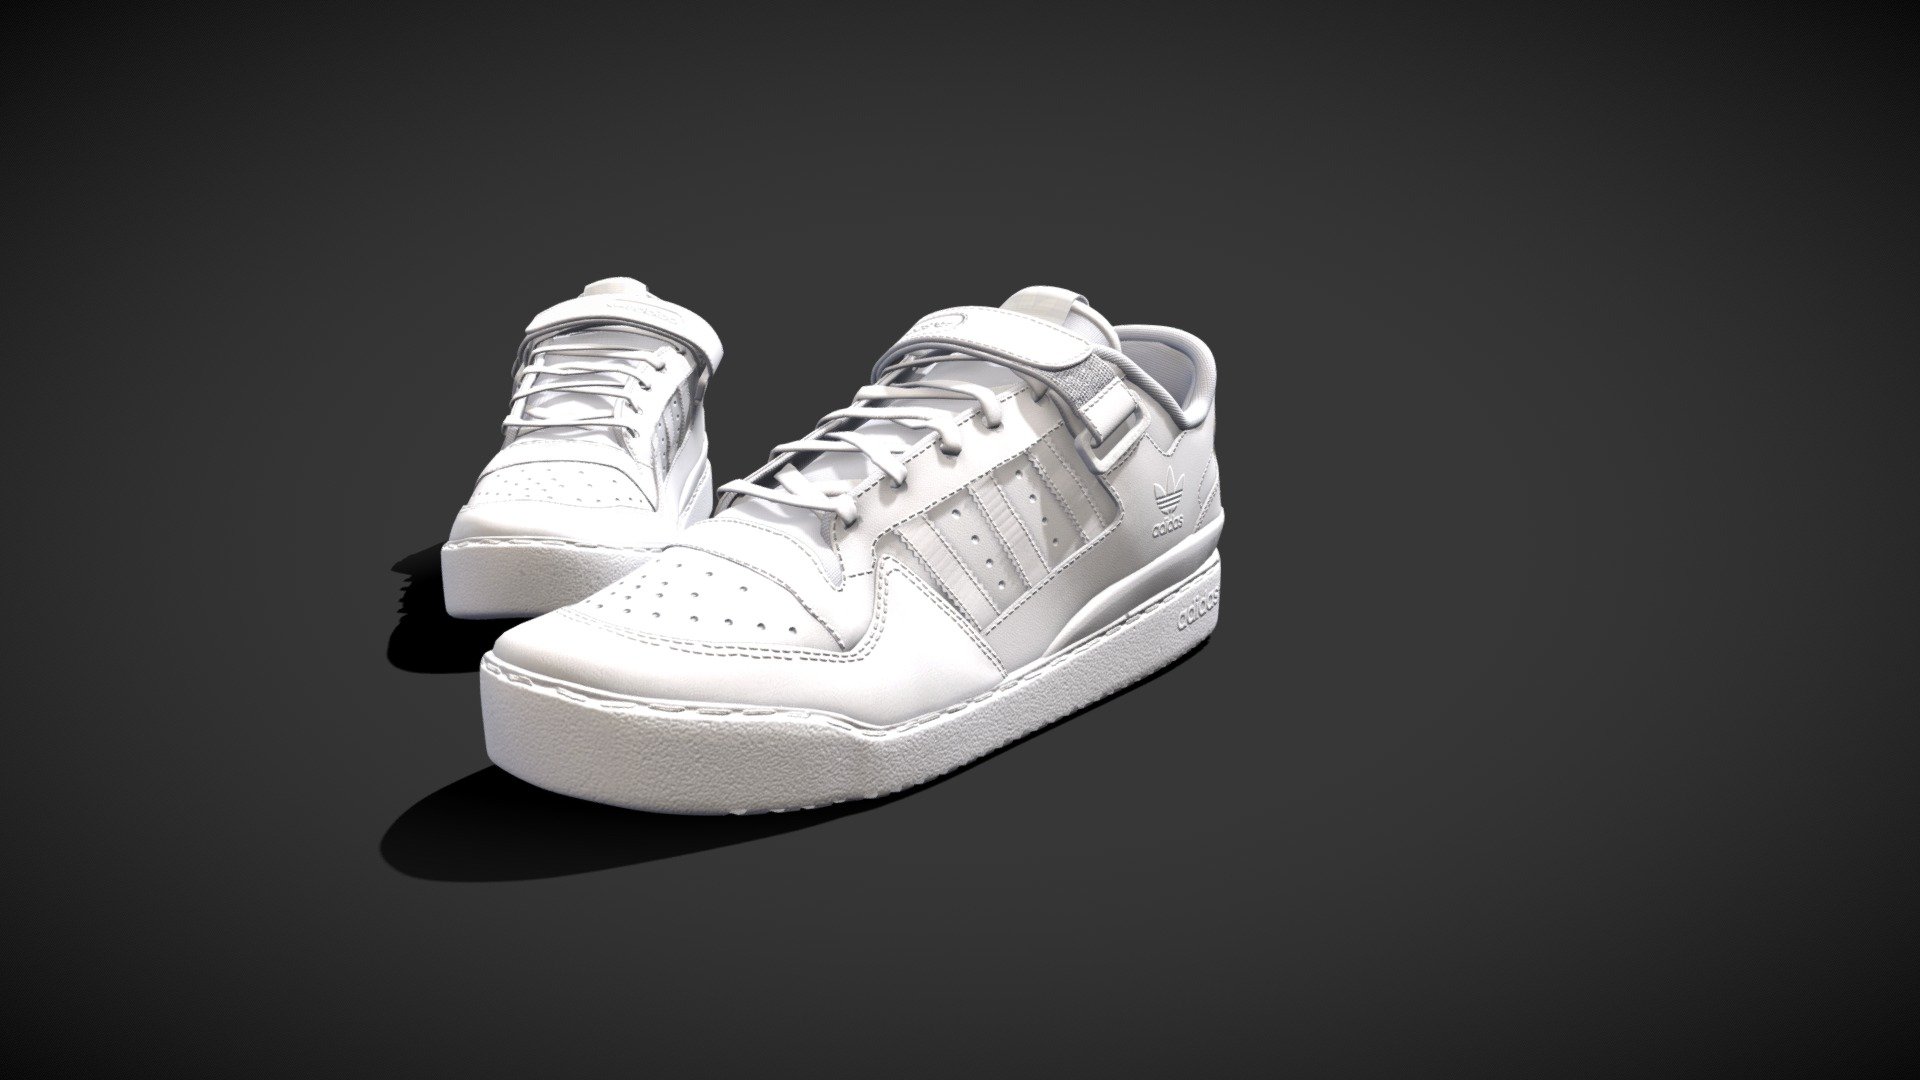 Adidas Forum Low Demo - 3D model by facu.goy [d094241] - Sketchfab